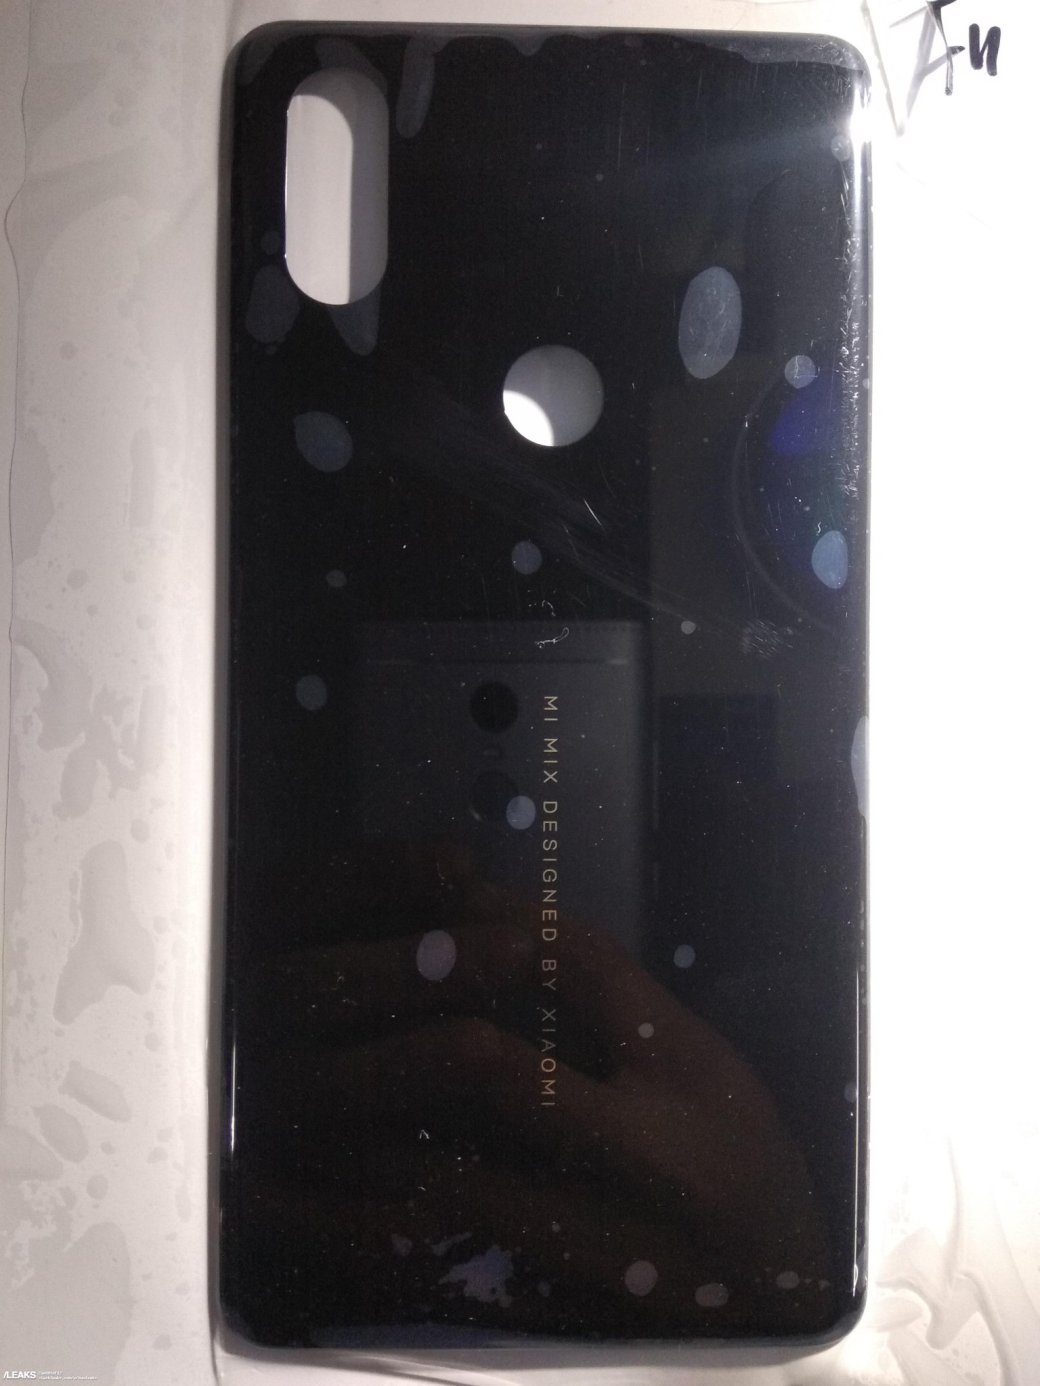 Галерея Запал иссяк? Xiaomi делает свой уникальный флагман Mi MIX 3 копией iPhone X - 1 фото